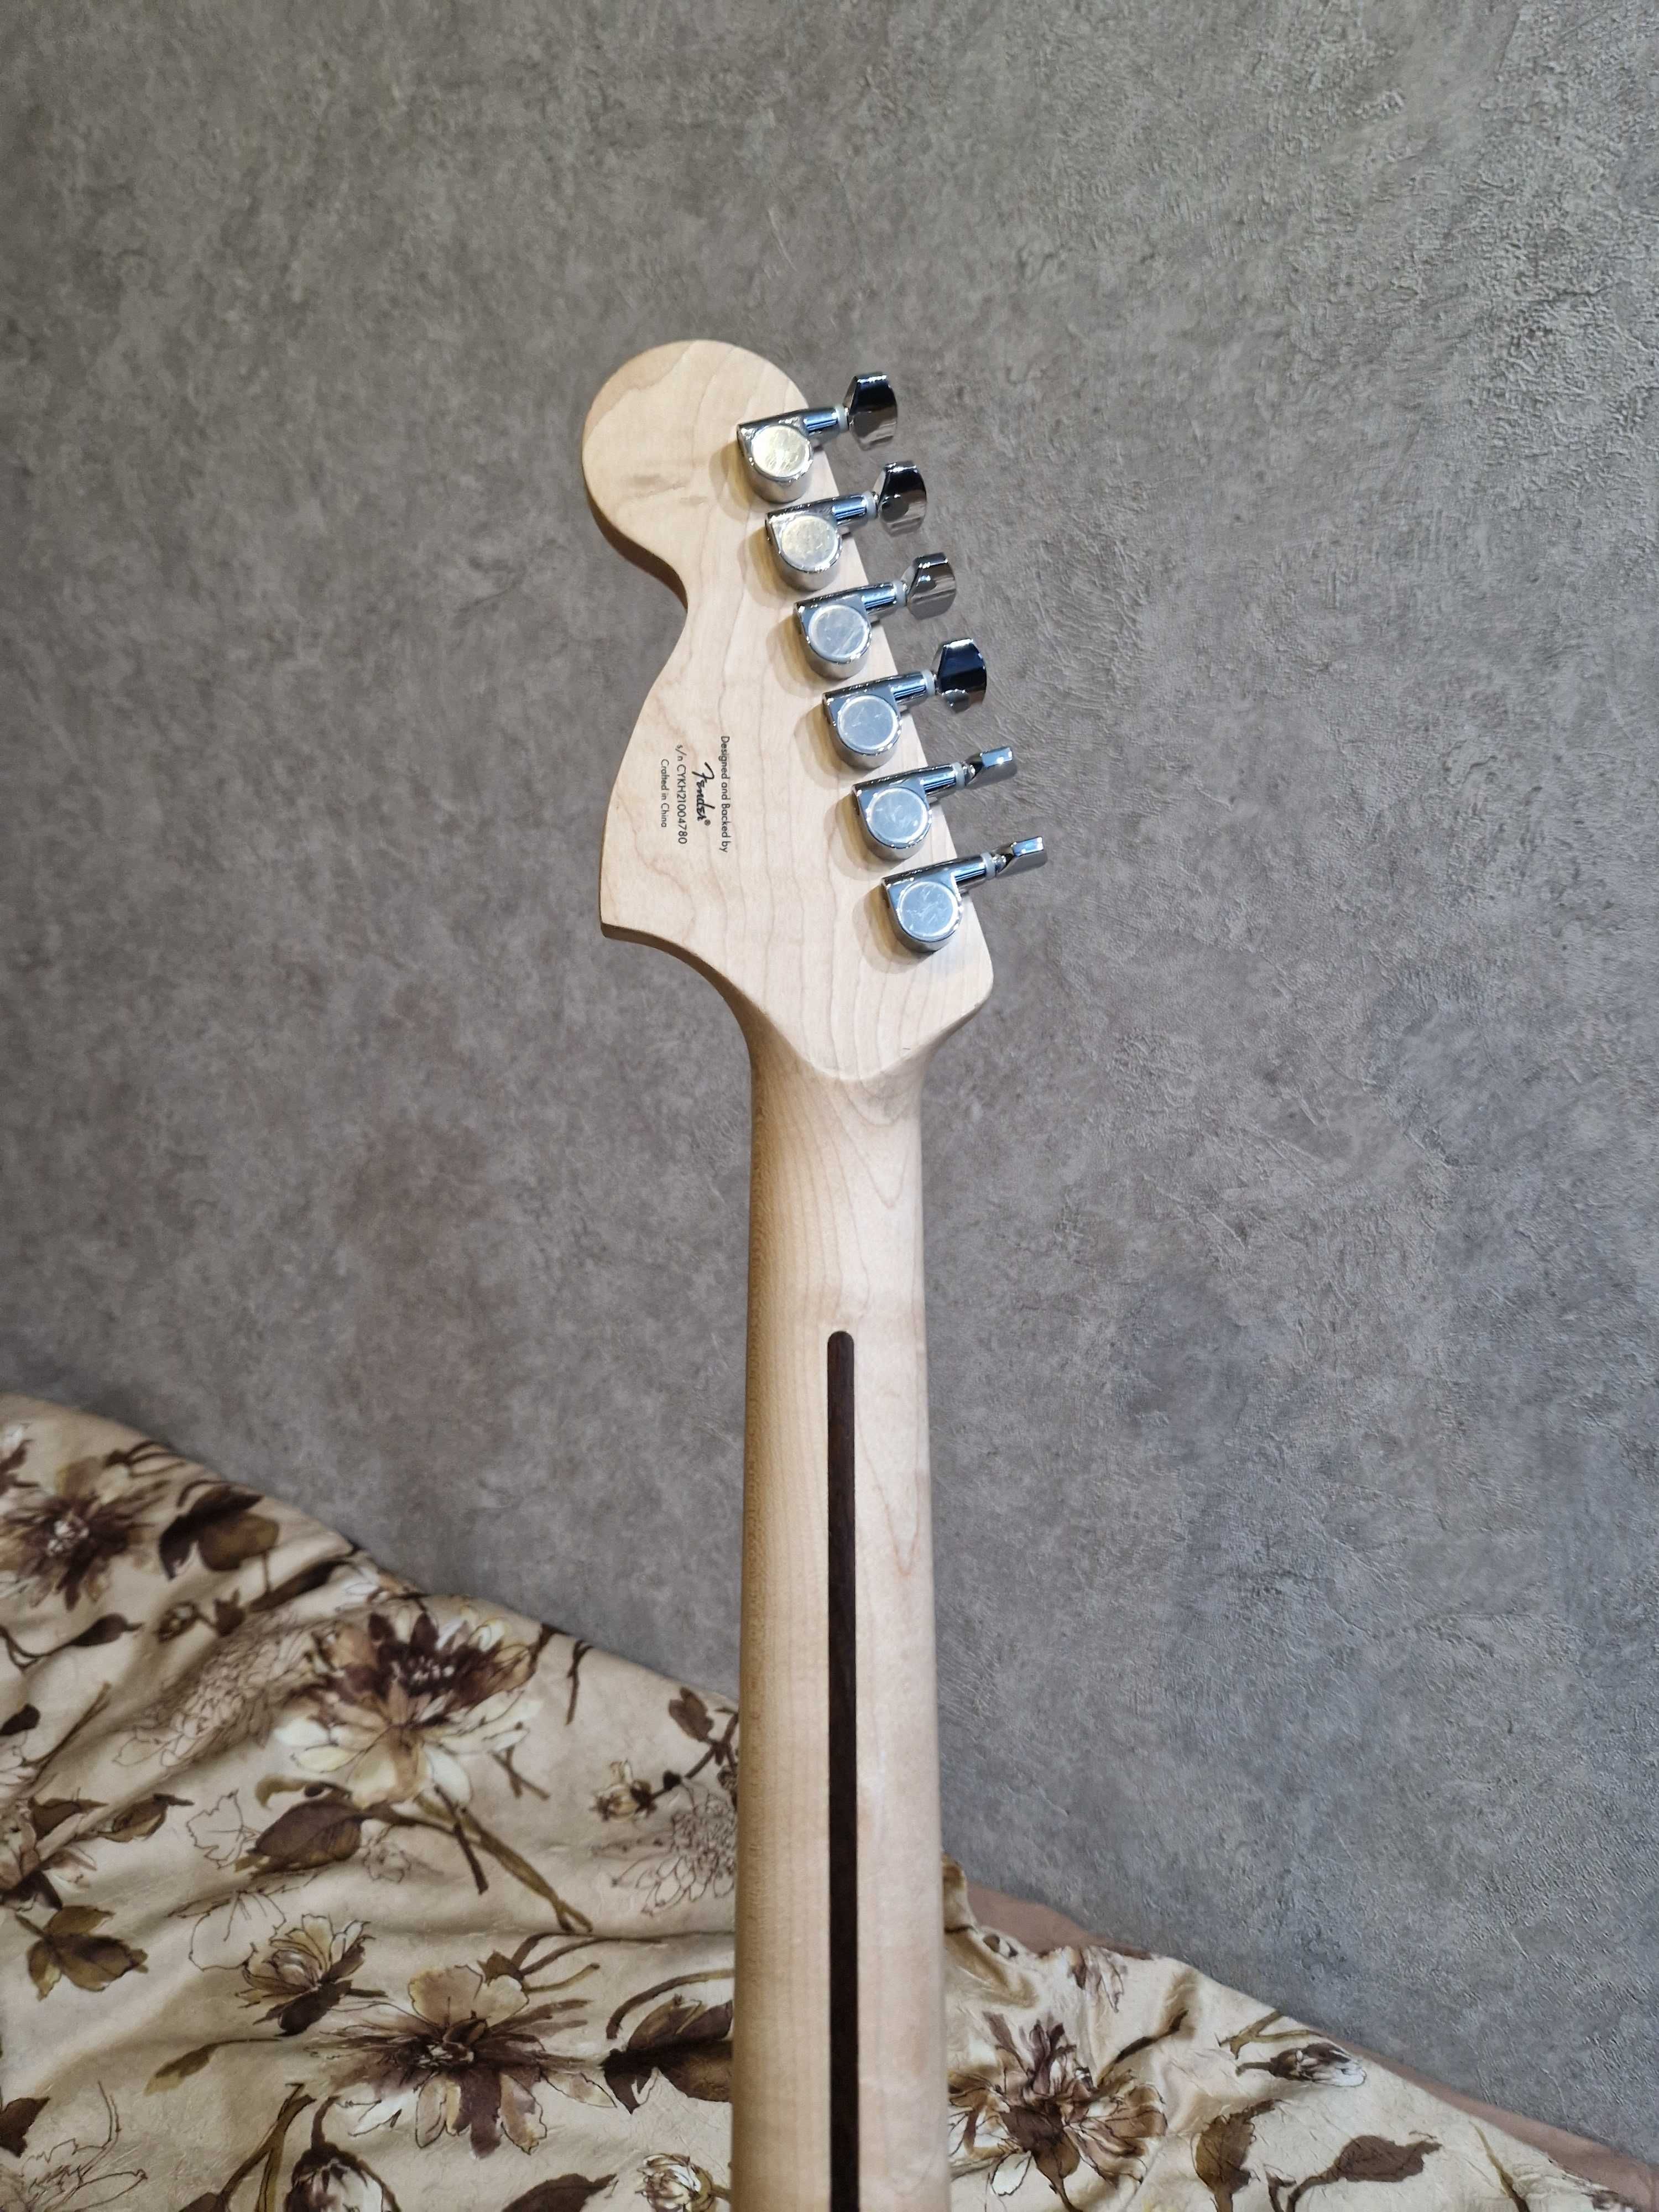 Электрогитара Squier Stratocaster